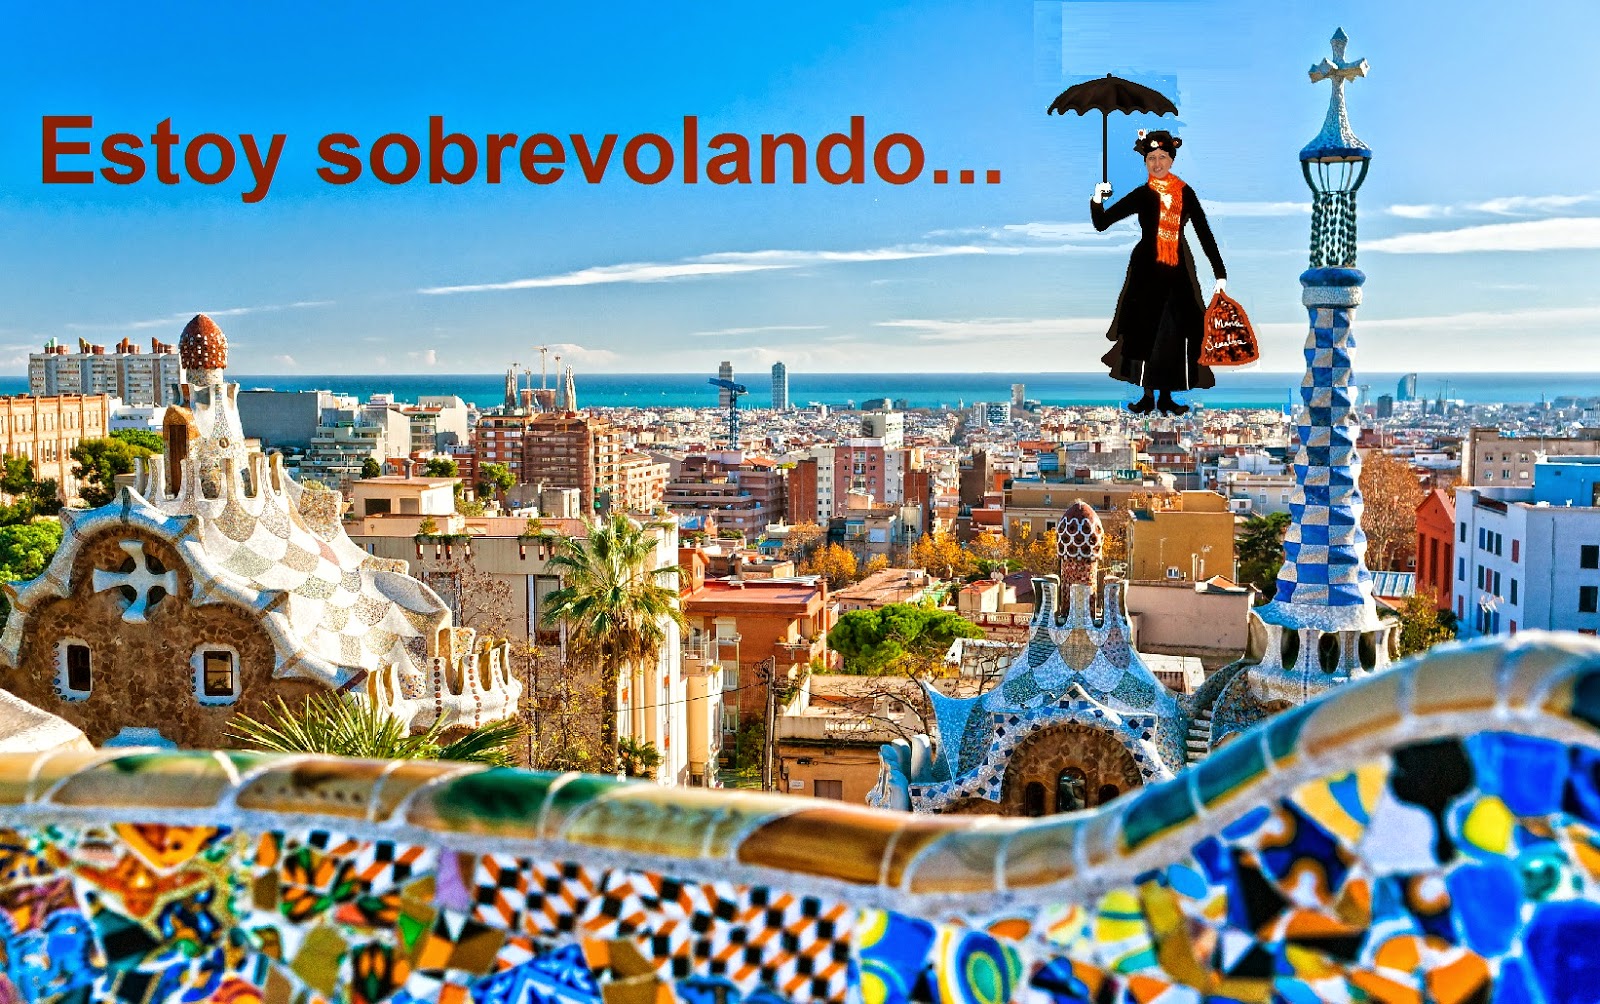 El Blog de María Serralba - Cinco horas en Barcelona